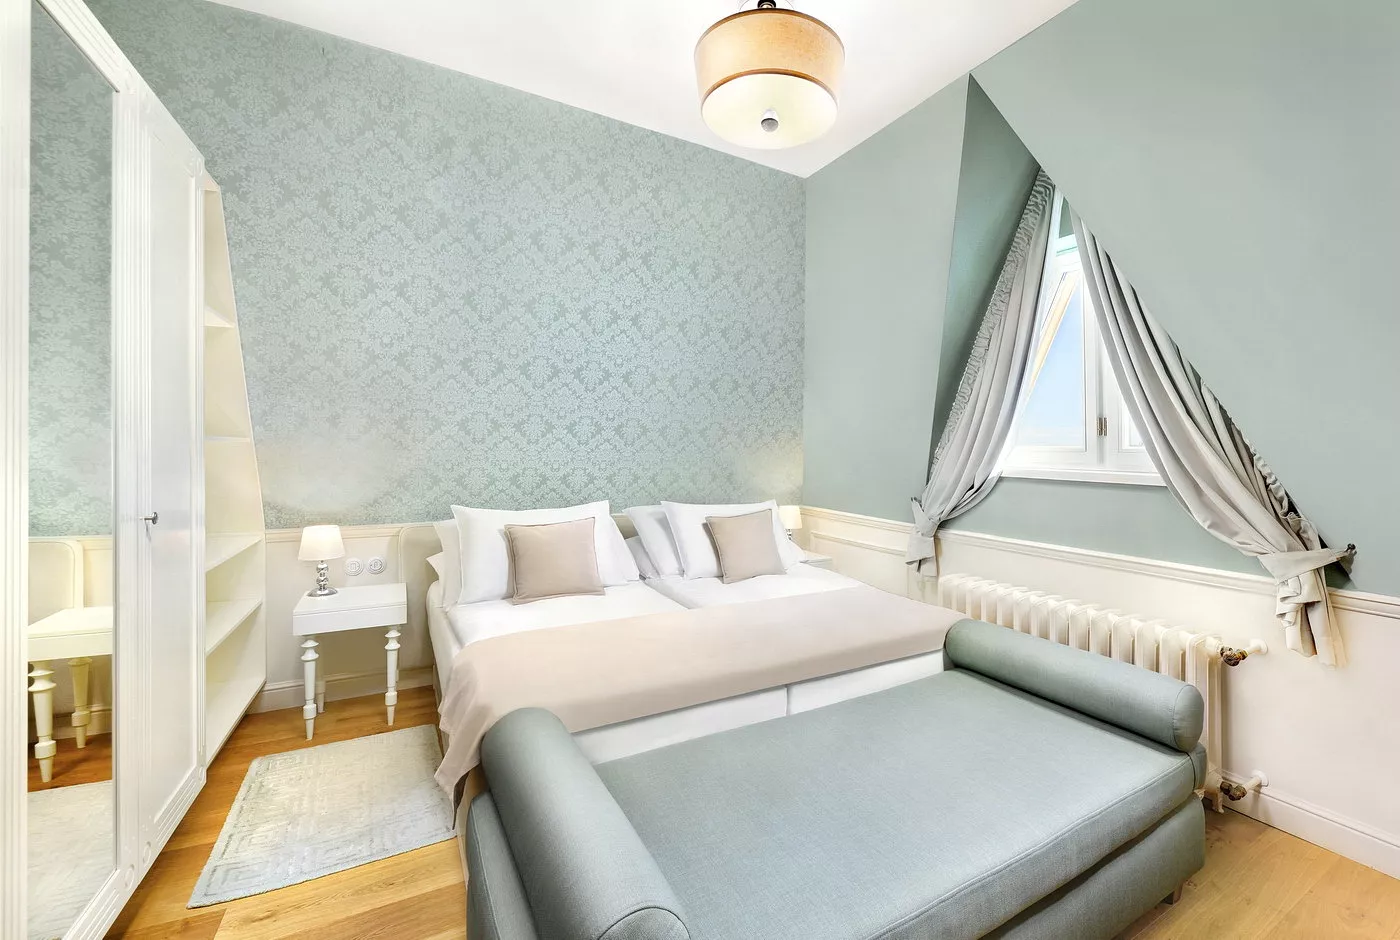 Izba s manželskou posteľou v Hoteli Lomnica vo Vysokých Tatrách